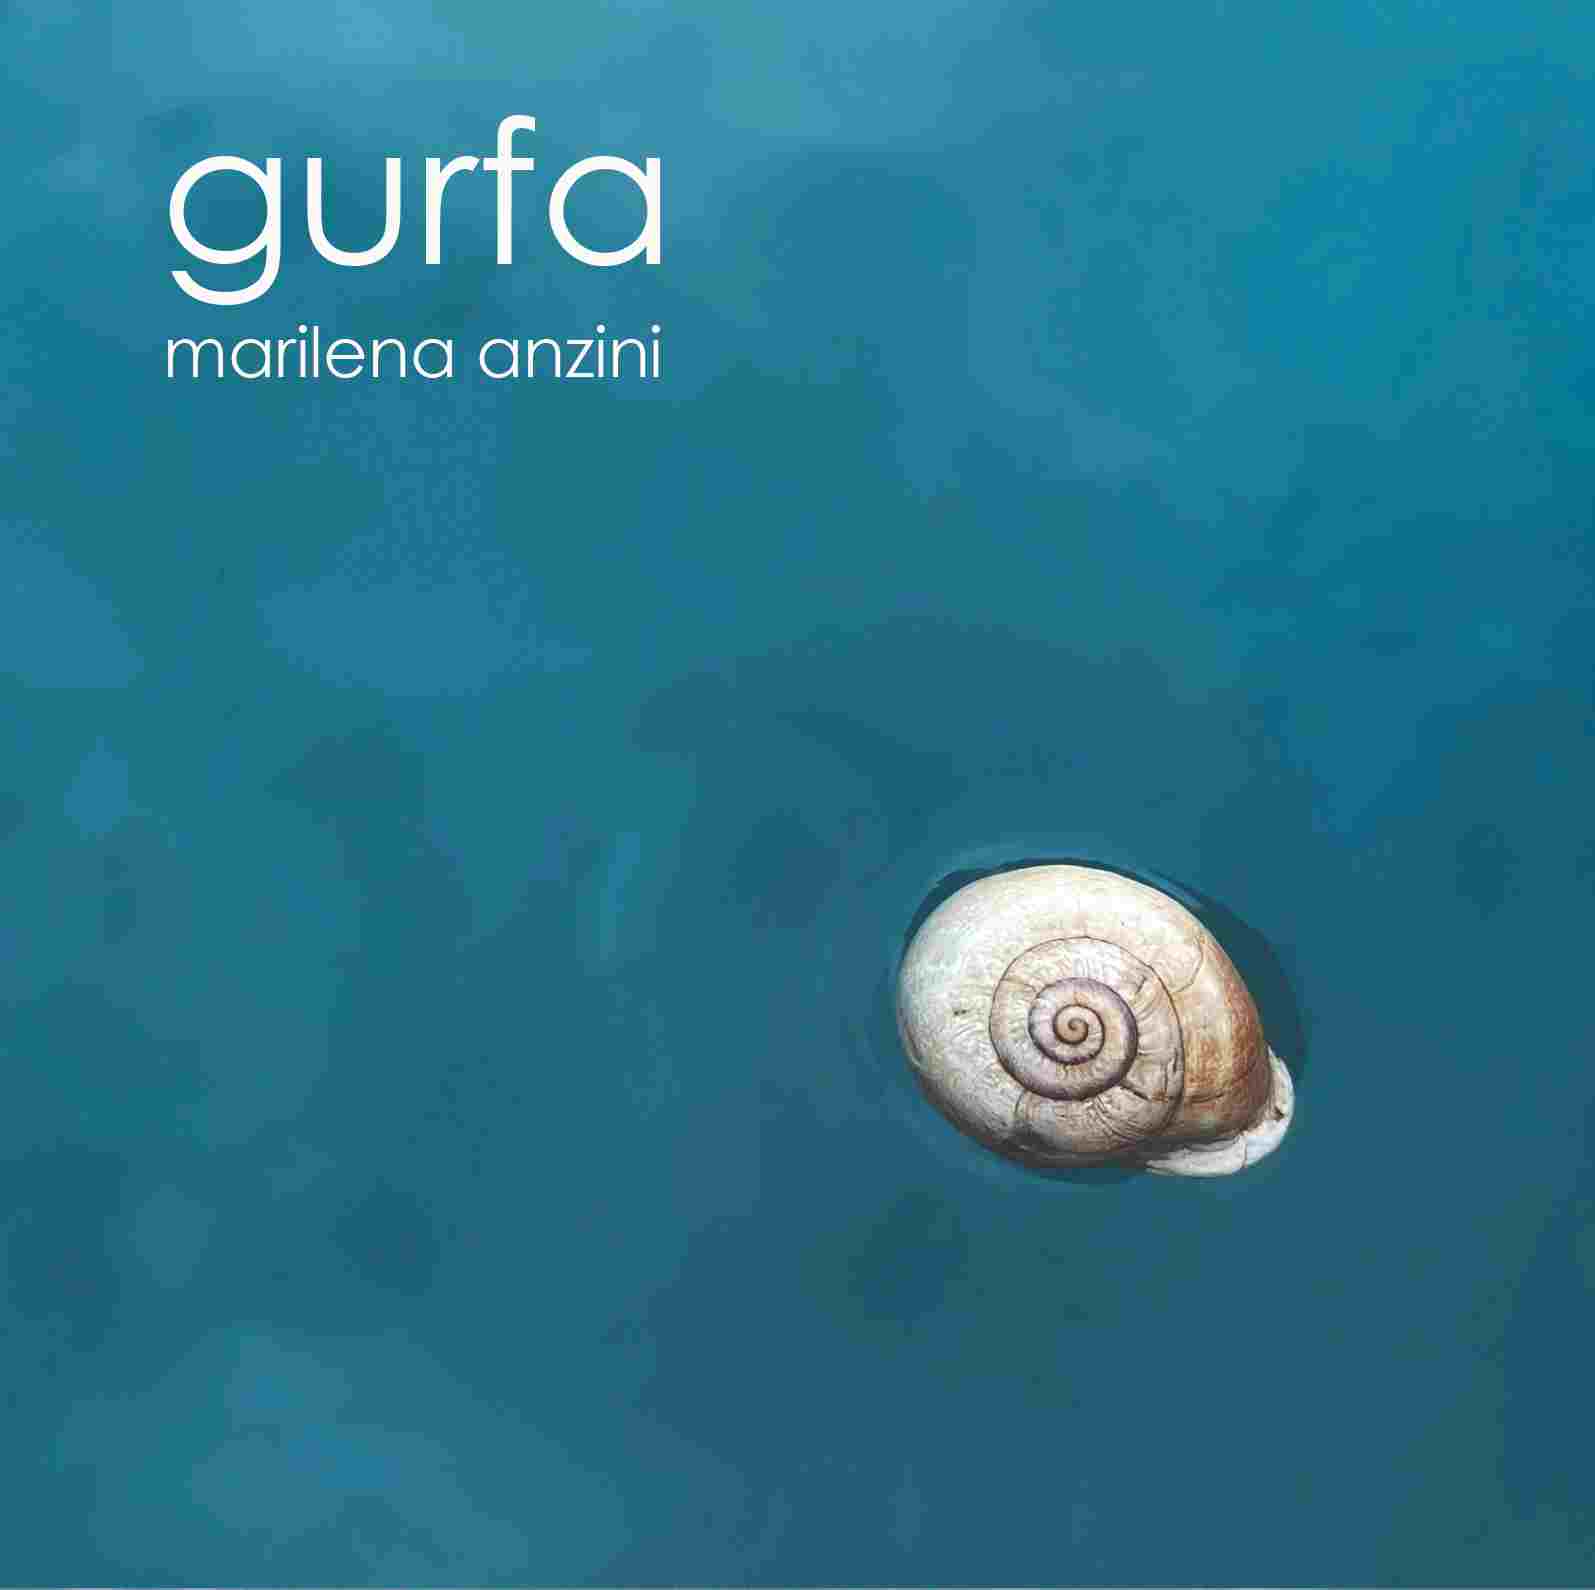 Foto 1 - MARILENA ANZINI “Gurfa” è il nuovo album della cantante e performer che svela il rapporto indissolubile fra musica e acqua